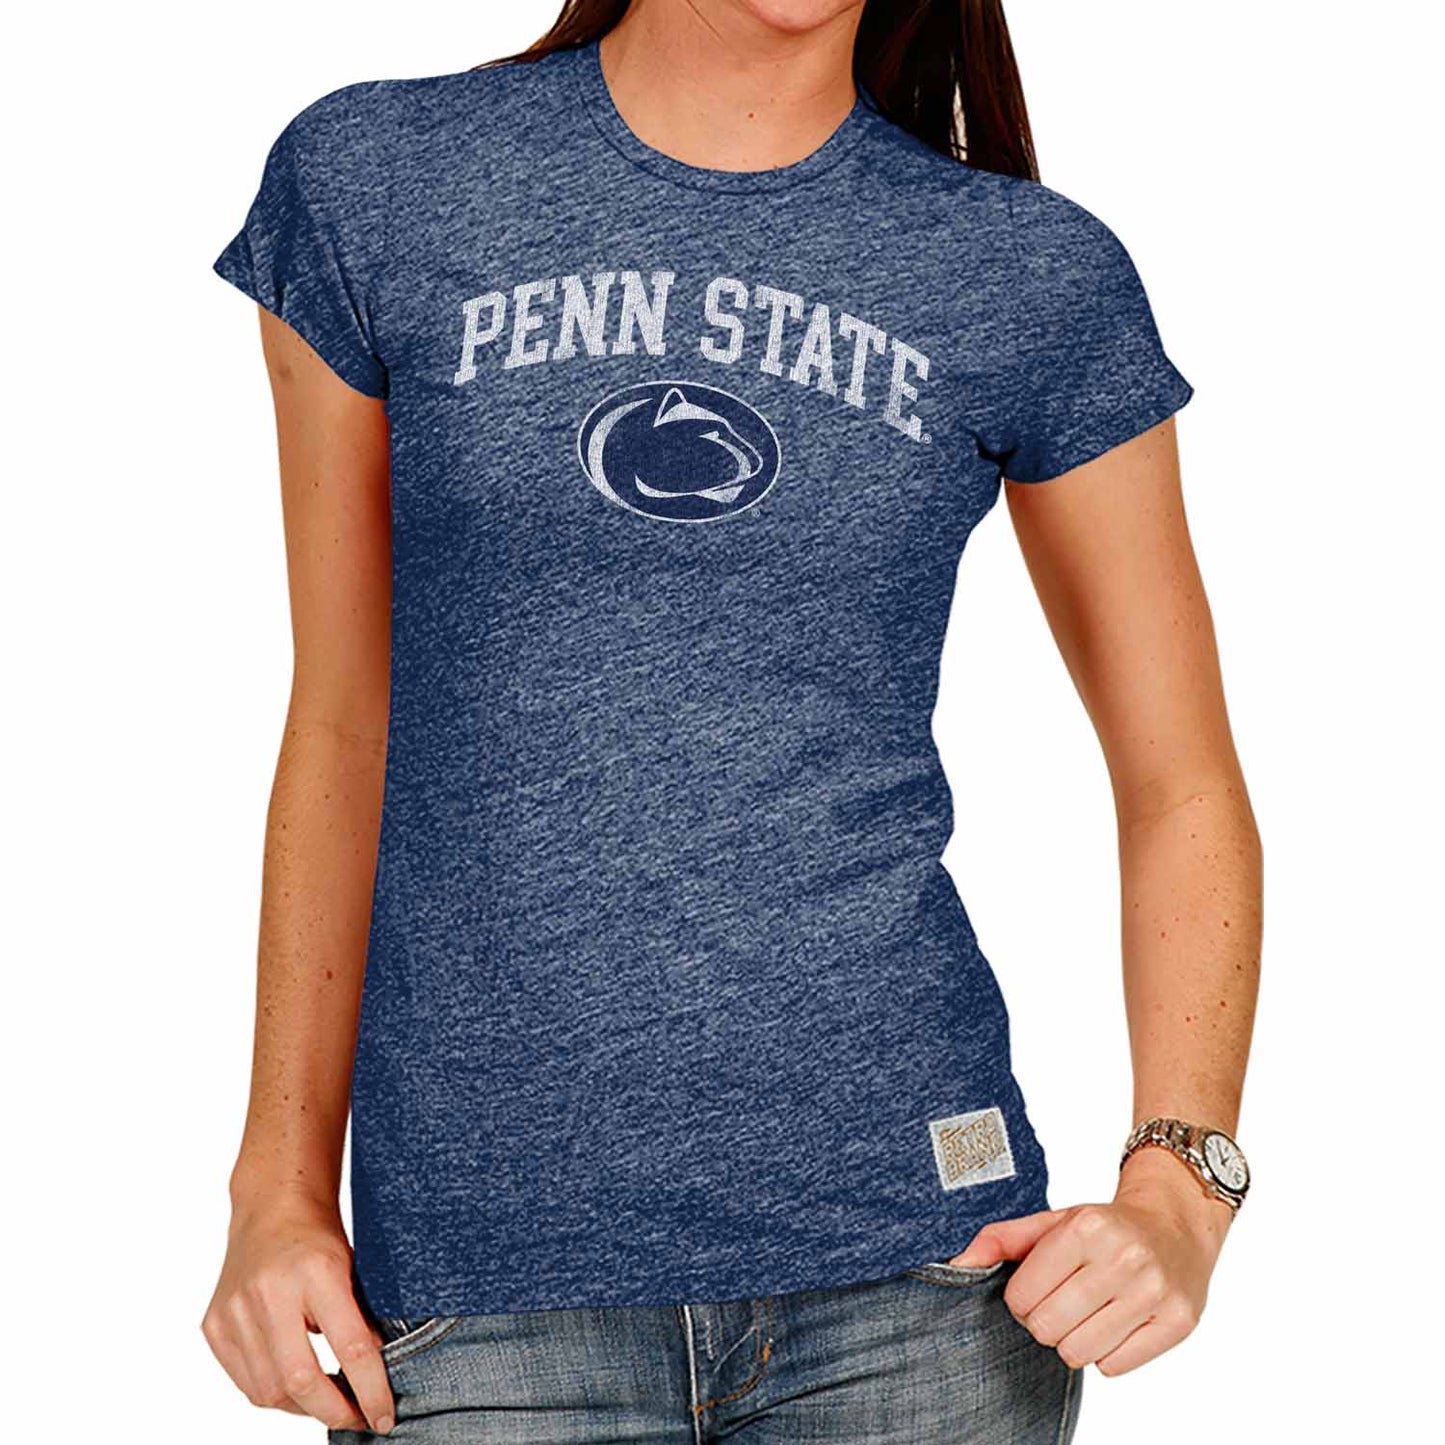 Penn State Nittany Lions University Women's T-Shirt  - Navy